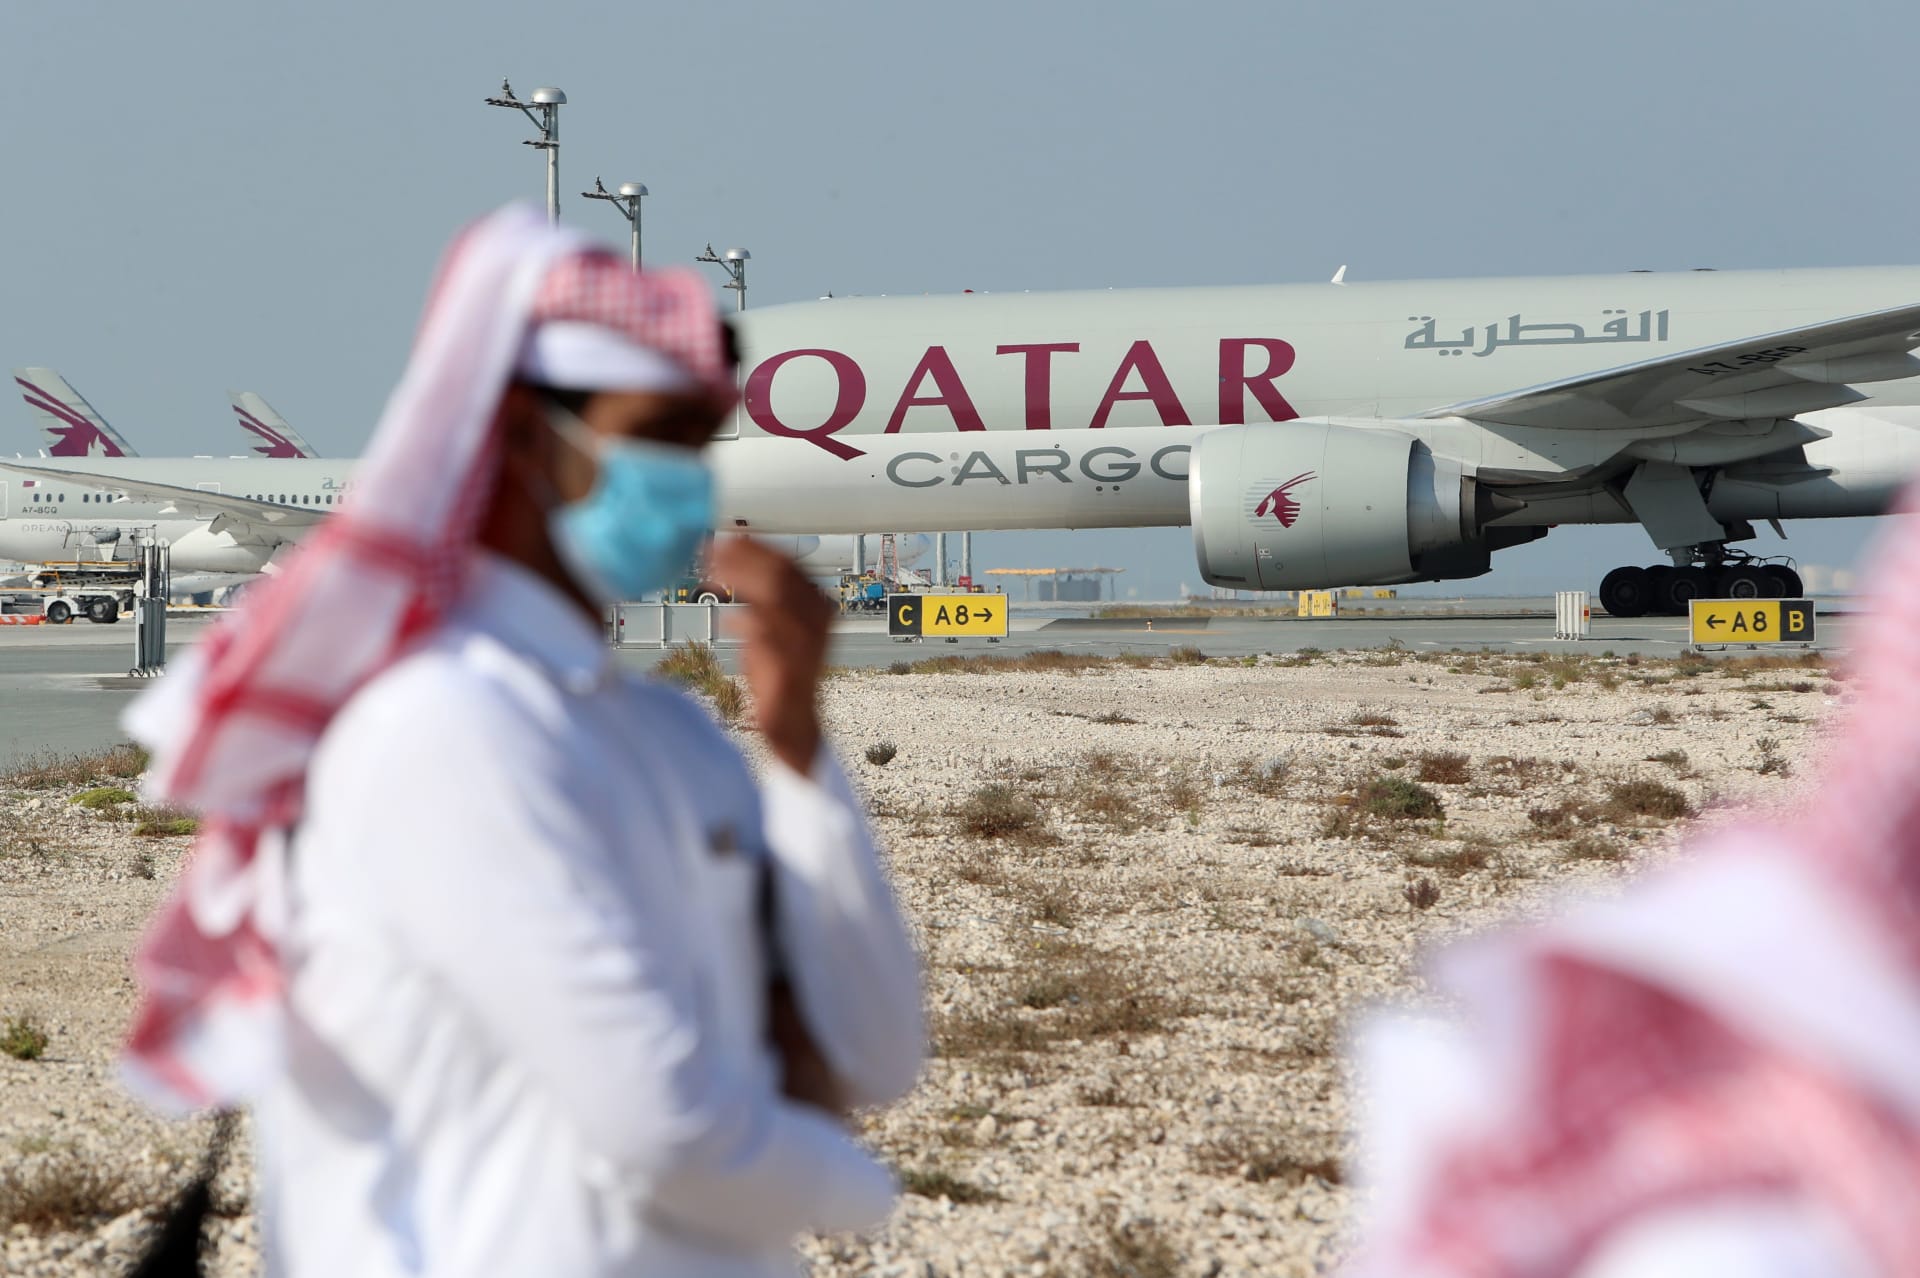  الخطوط القطرية تعلن تعليق عمليات الحجز من الإمارات بشكل مؤقت بعد "مخاوف بريطانية"